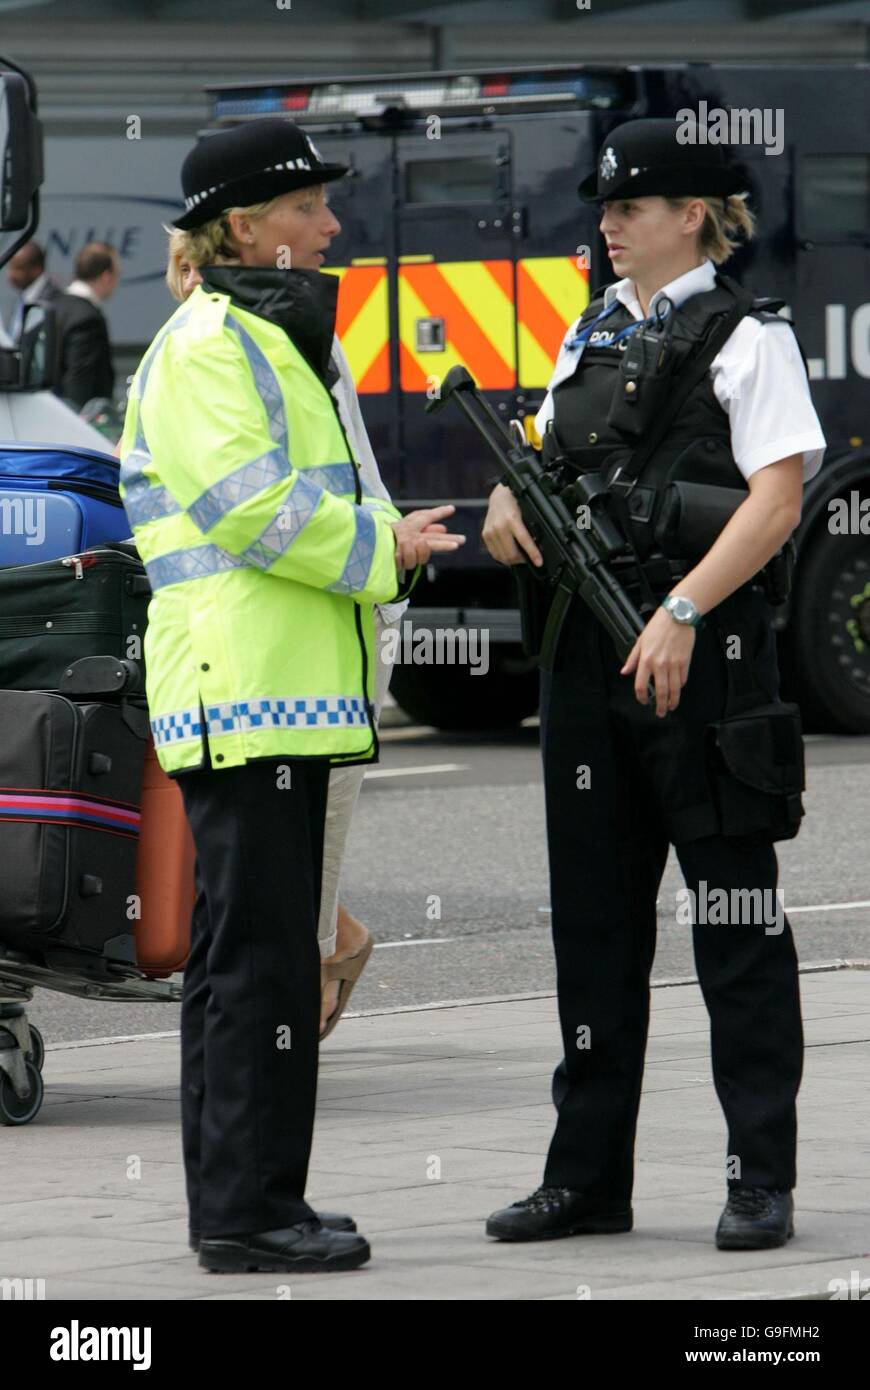 Una poliziotto armata fuori dal Terminal 3 dell'aeroporto di Heathrow, dove le cose stavano lentamente tornando alla normalità oggi, con l'introduzione di misure di sicurezza dopo le operazioni anti-terrore della scorsa settimana, sono state ridotte. Foto Stock